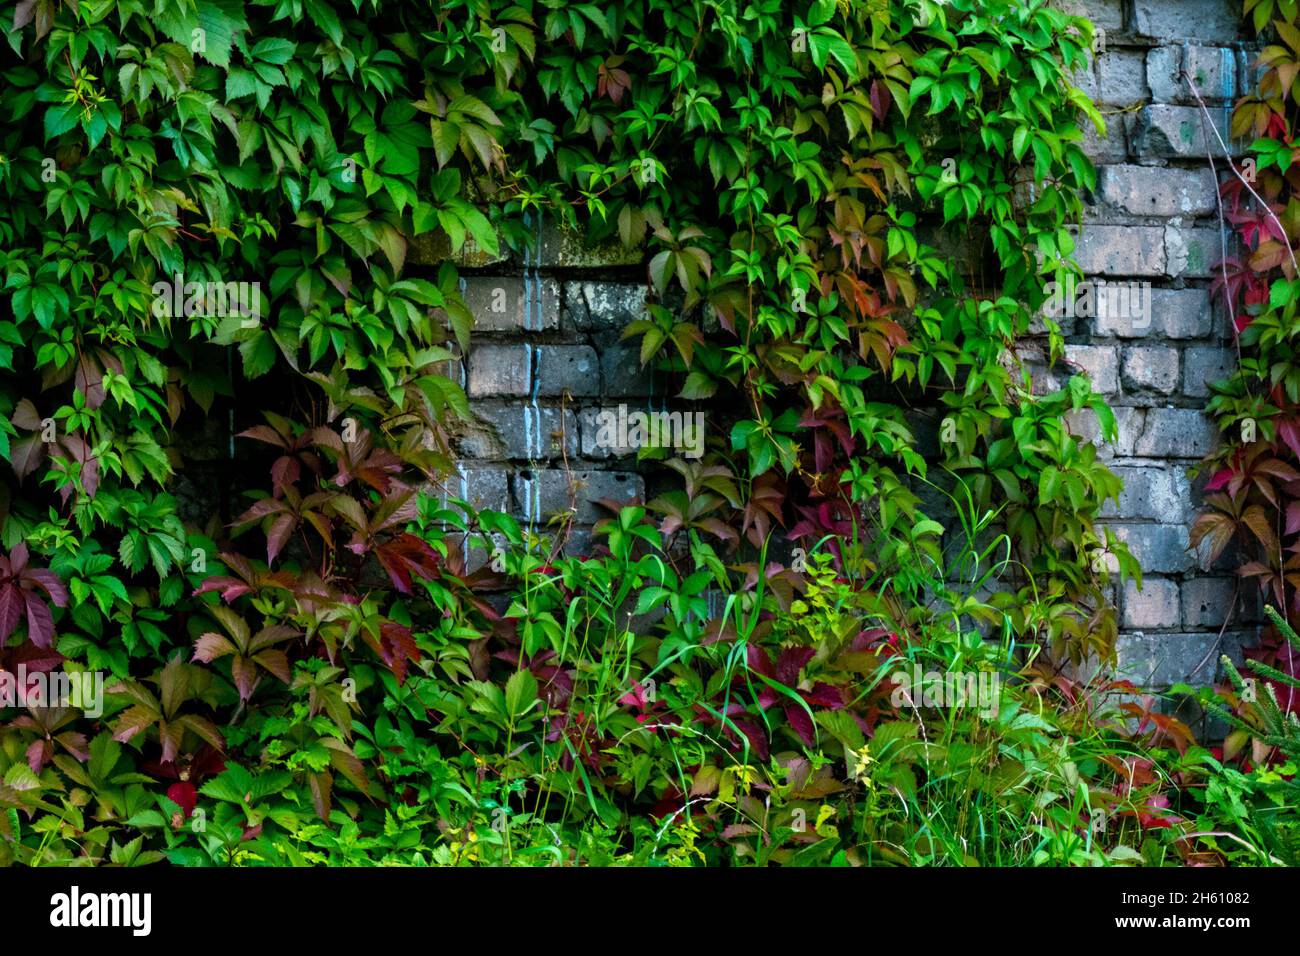 Parthenocissus quinquefolia, connu sous le nom de Virginia rampante, Victoria rampante, cinq feuilles de lierre.Feuillage vert sur le mur de briques blanches.Arrière-plan naturel.Élevée Banque D'Images